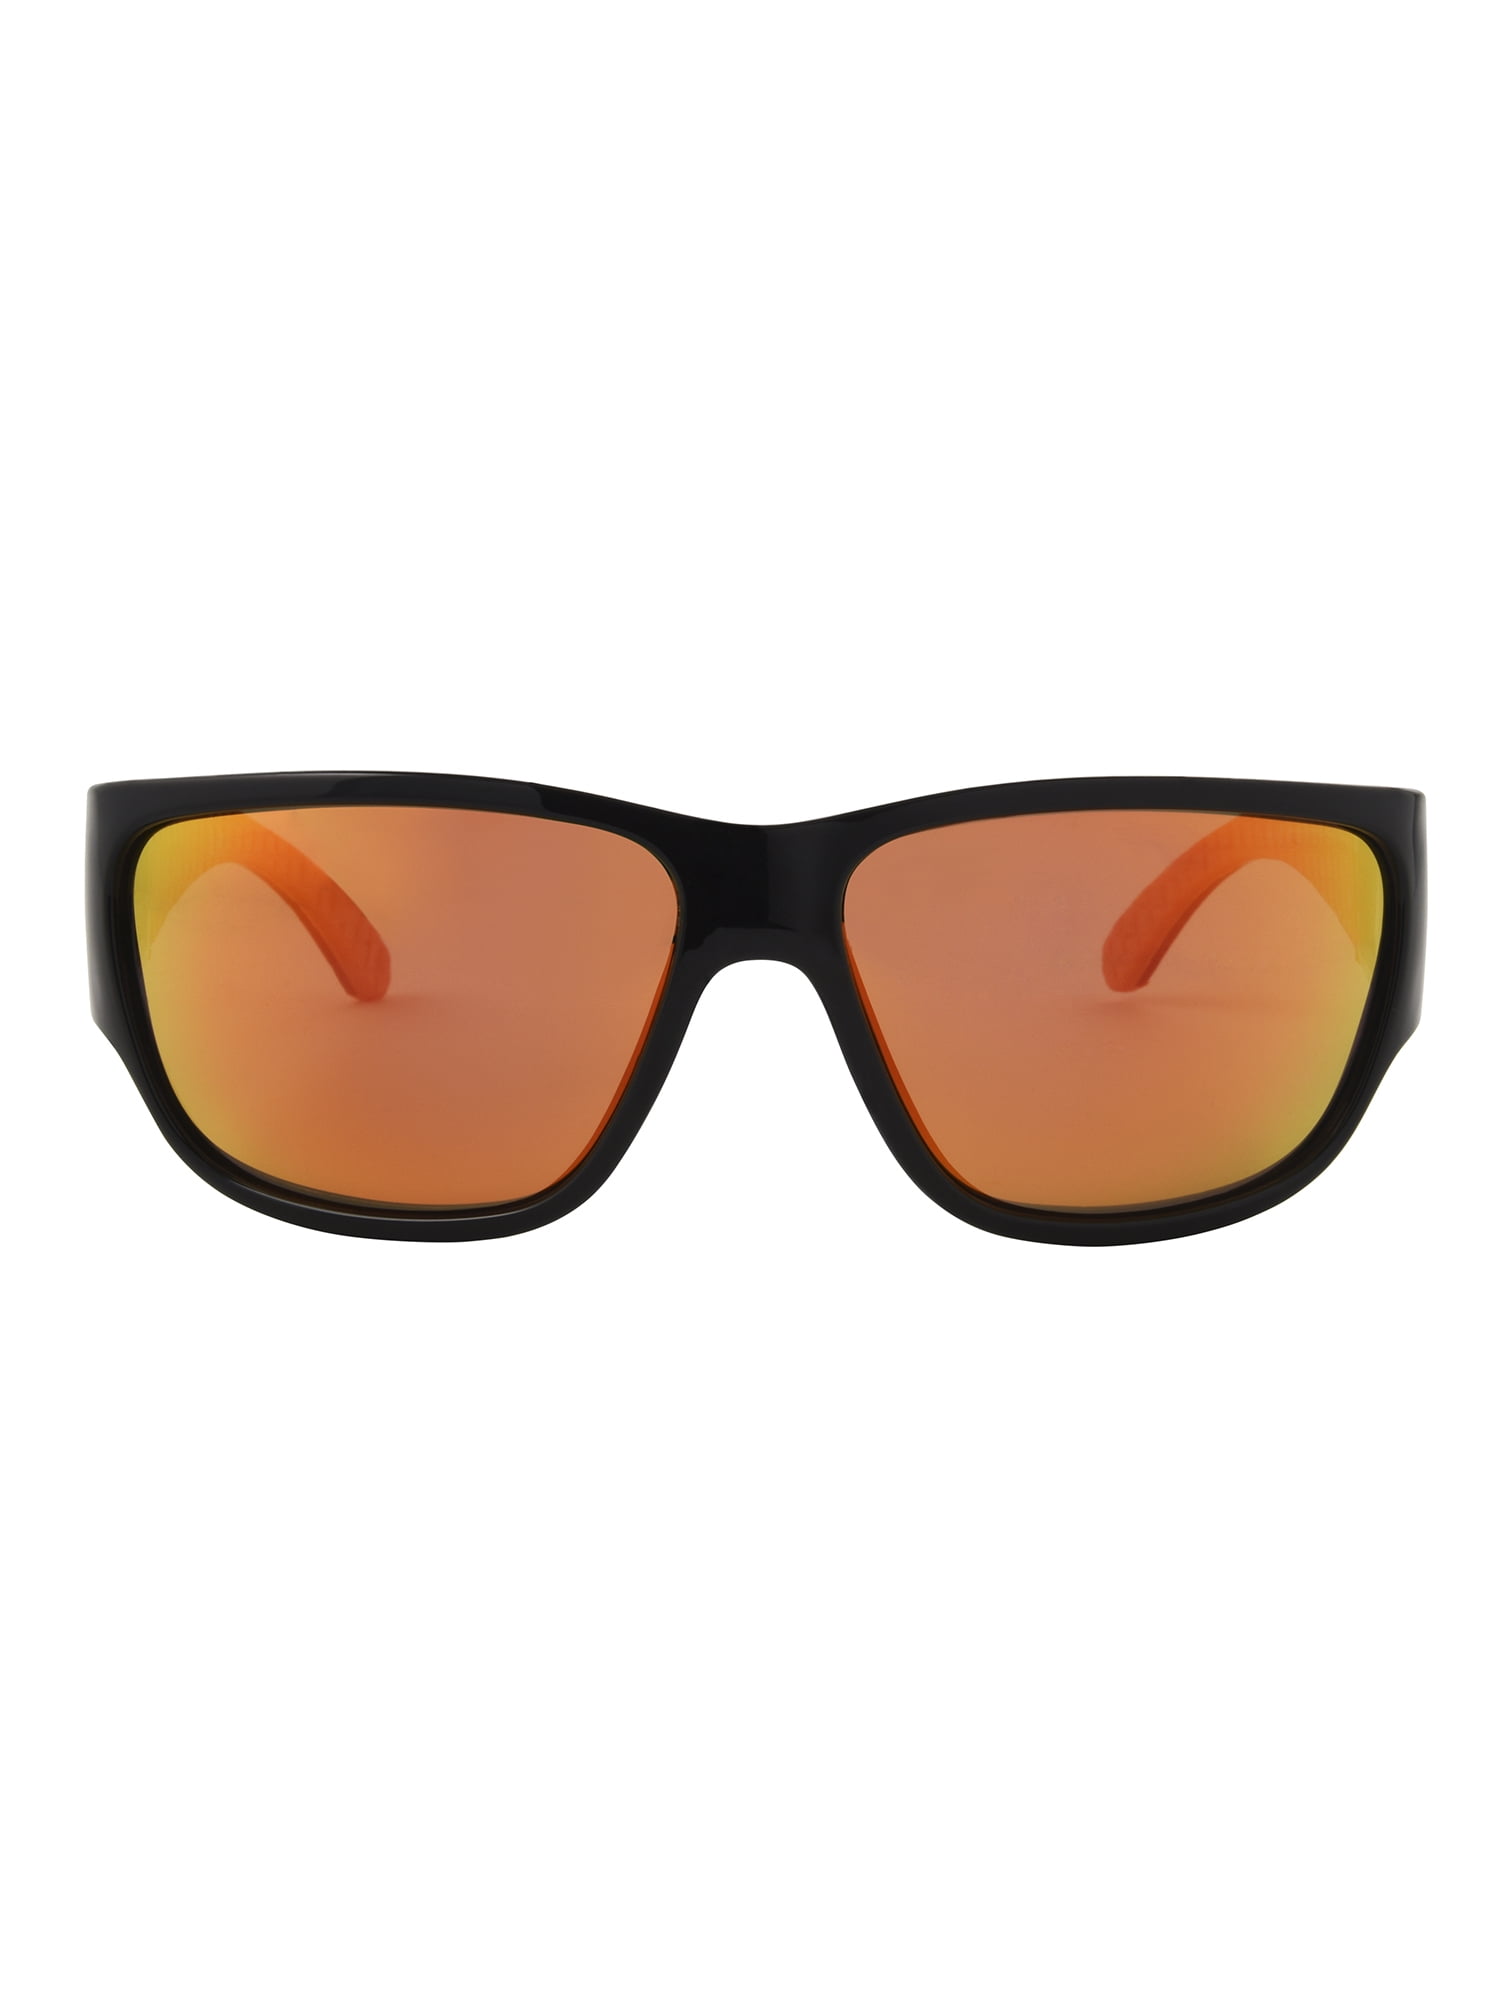 Foster Grant Mens Wrap Black Sunglasses - Walmart.com